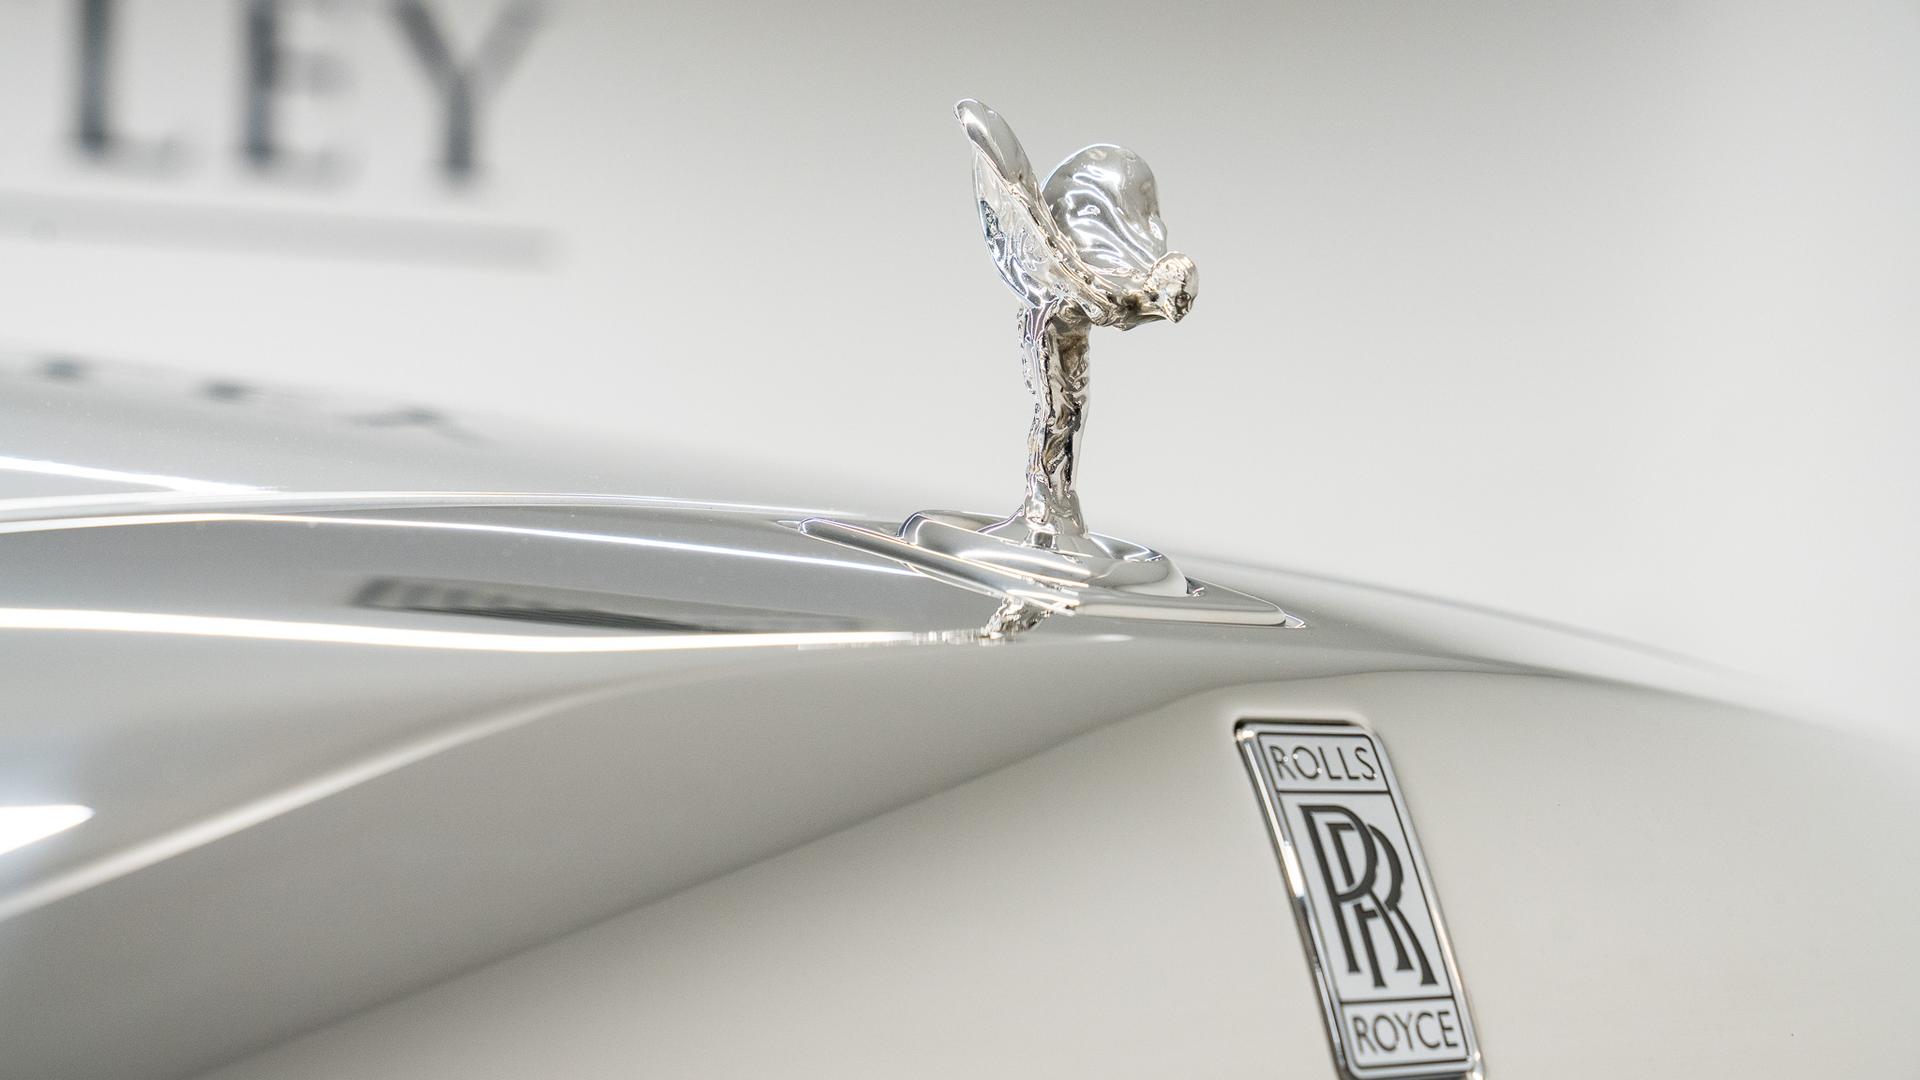 Rolls-Royce Phantom Photo 22708620-c0c5-4c1d-ab2a-0a756696b1a7.jpg